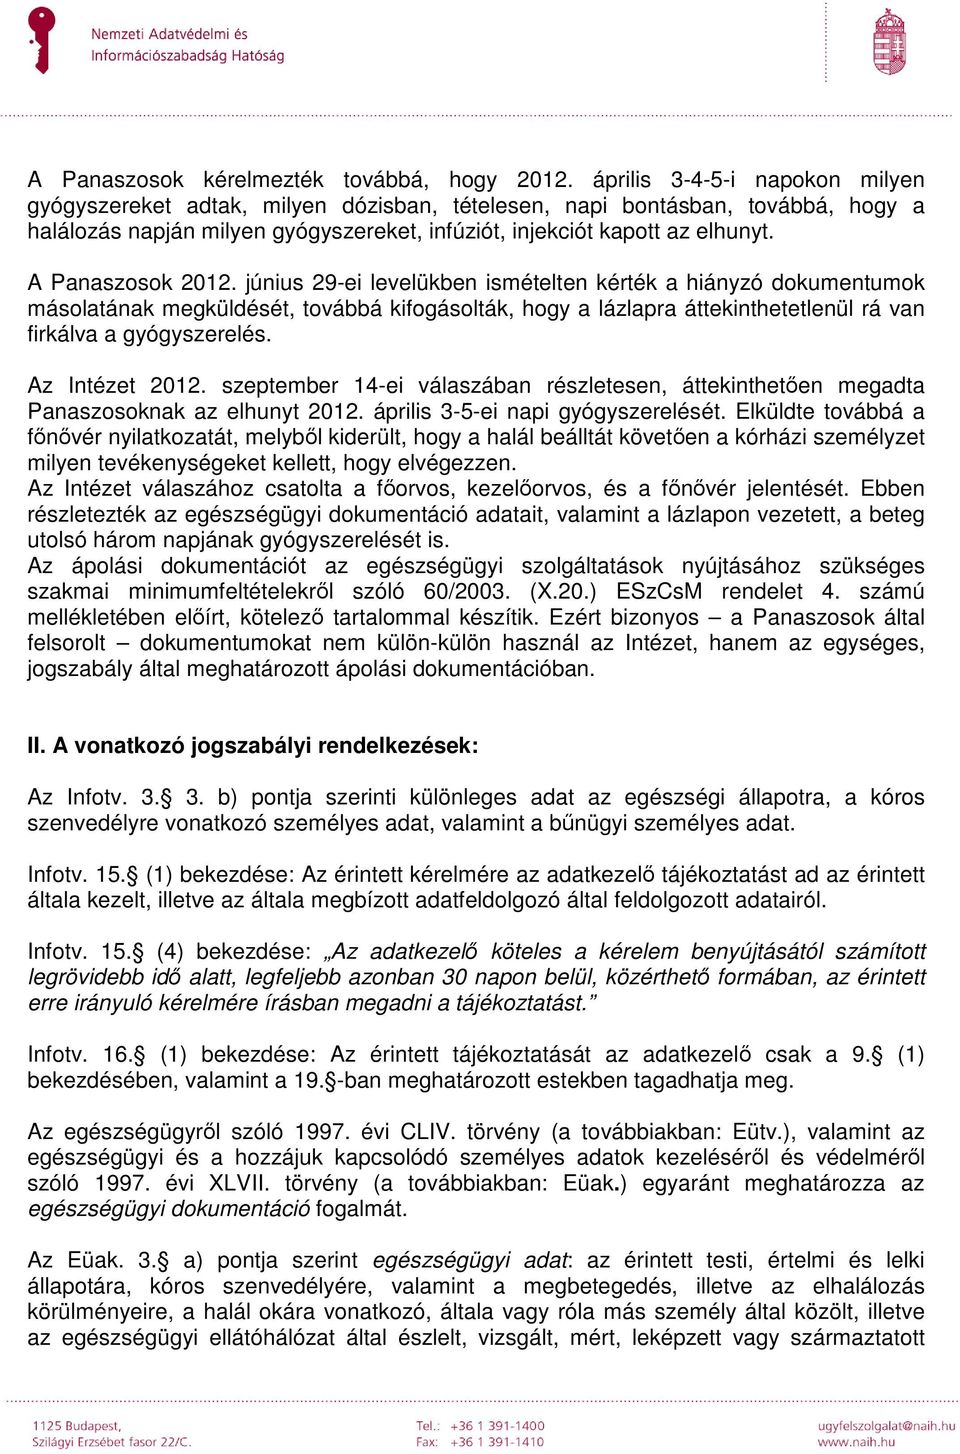 A Panaszosok 2012. június 29-ei levelükben ismételten kérték a hiányzó dokumentumok másolatának megküldését, továbbá kifogásolták, hogy a lázlapra áttekinthetetlenül rá van firkálva a gyógyszerelés.